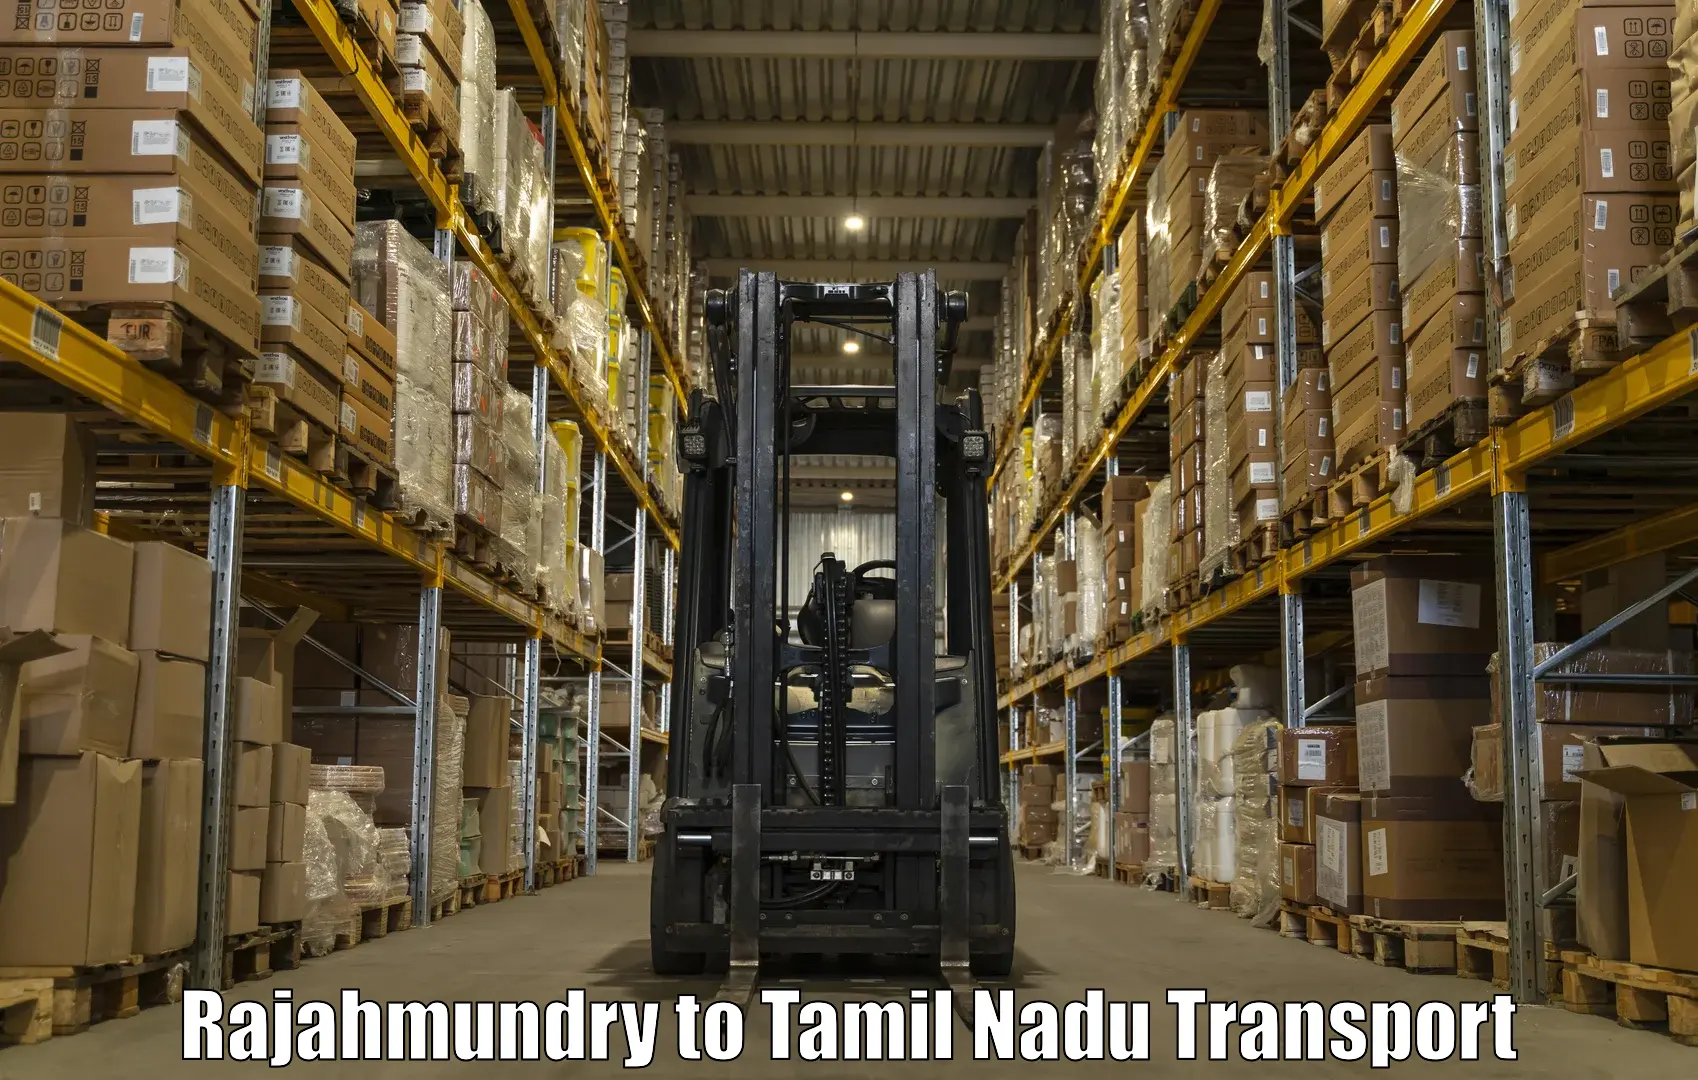 India truck logistics services Rajahmundry to Muthukulathur